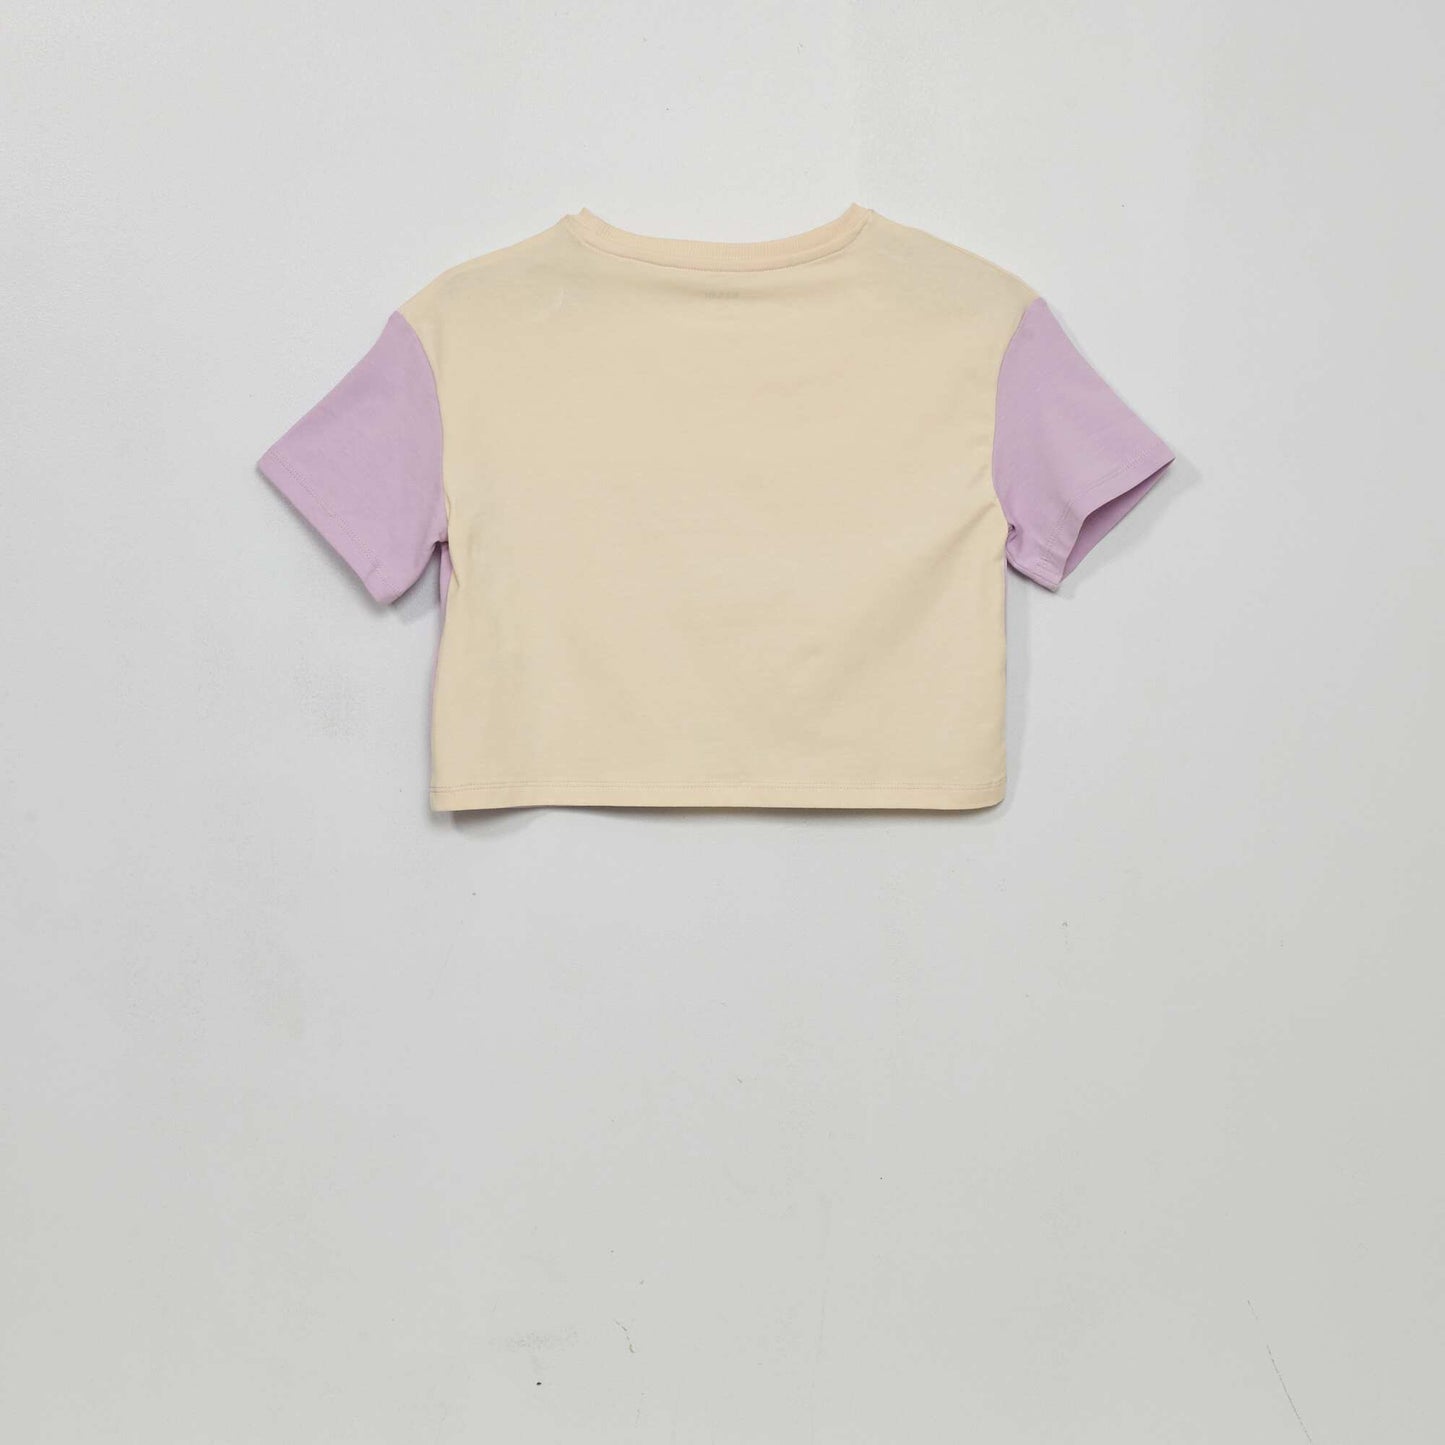 Tee-shirt crop top imprim Beige/violet